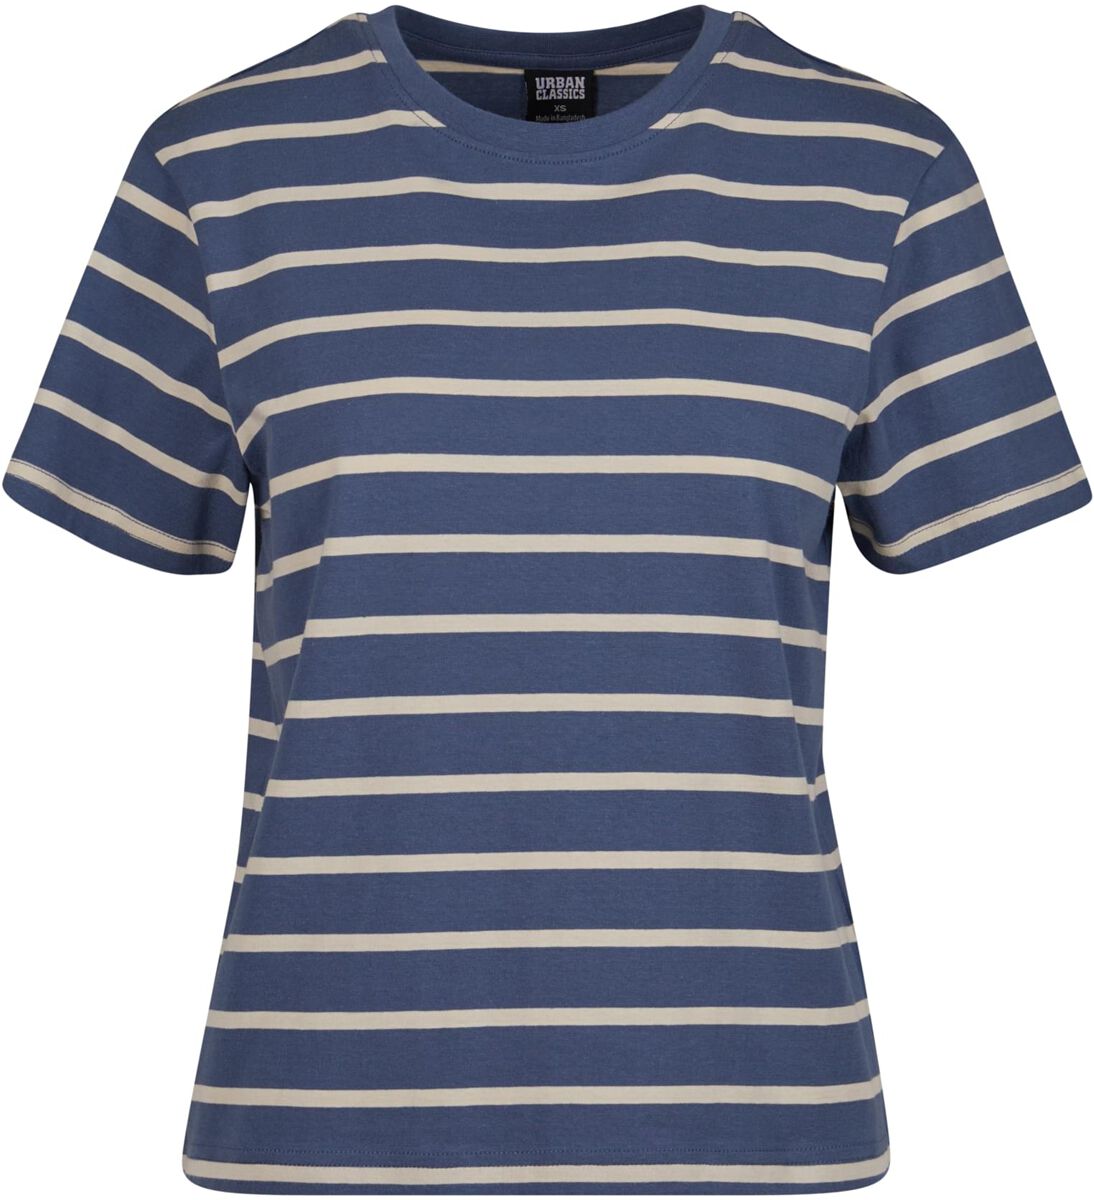 Urban Classics Ladies Striped Boxy Tee T-Shirt blau in S